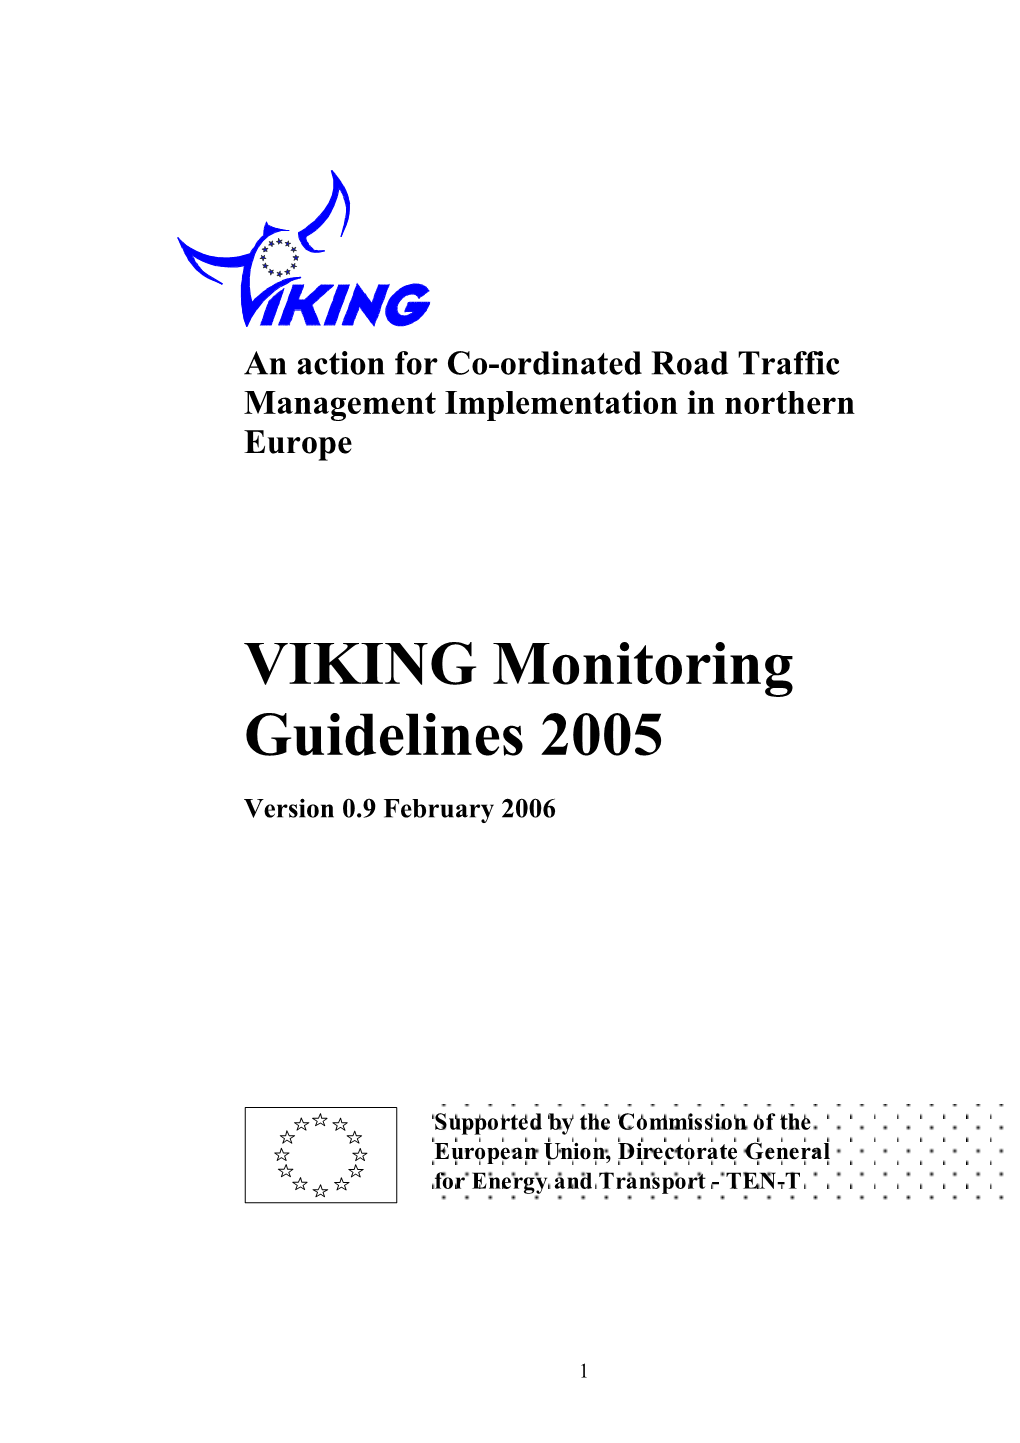 VIKING Monitoring Guidelines 2005 Version